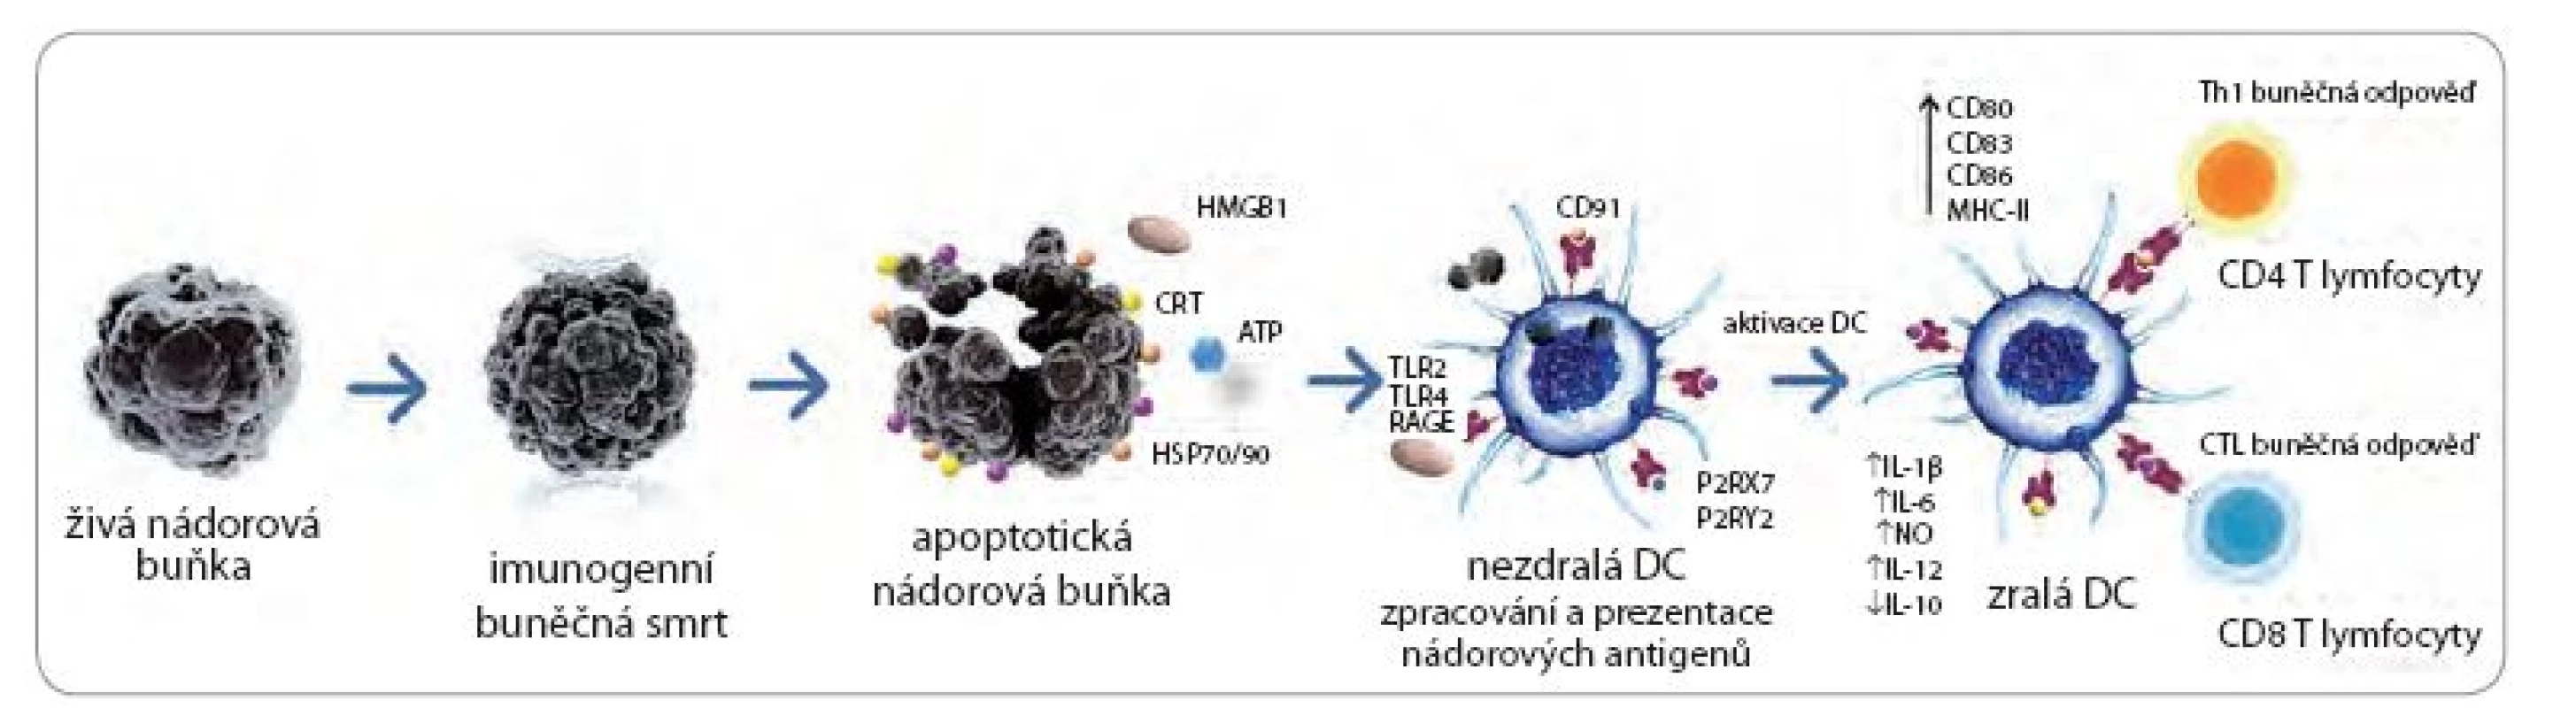 Indukce protinádorové odpovědi imunogenní nádorovou buňkou.